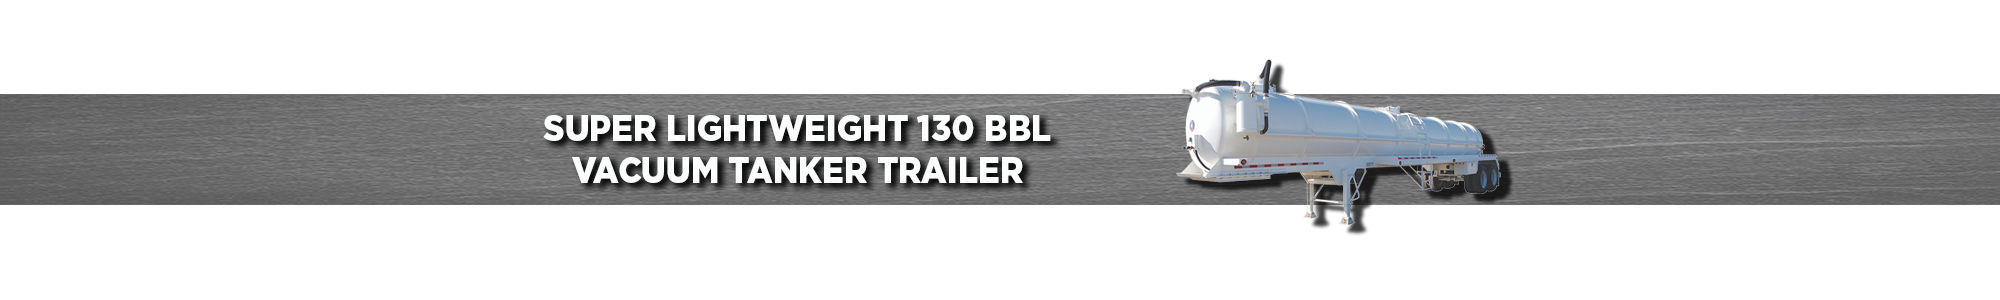 Super Lightweight 130 BBL Vacuum Tanker Trailer